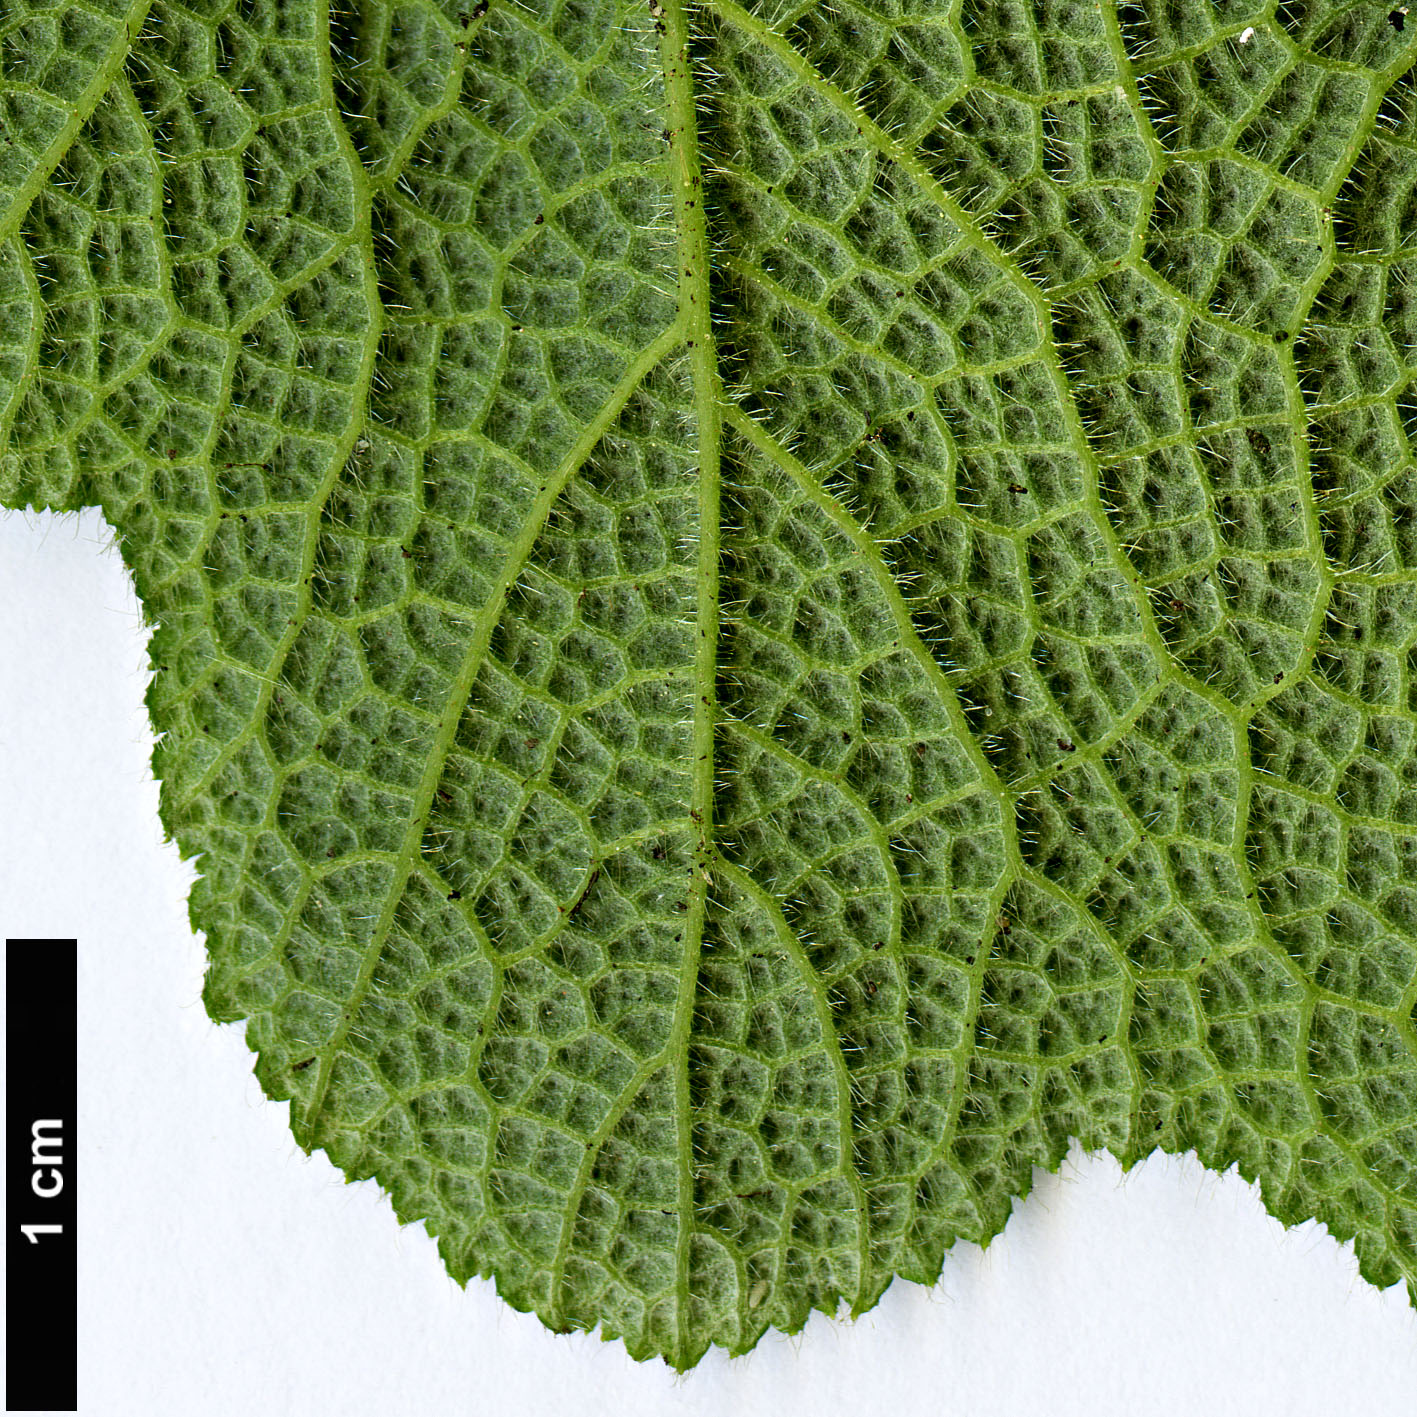 High resolution image: Family: Rosaceae - Genus: Rubus - Taxon: alceifolius